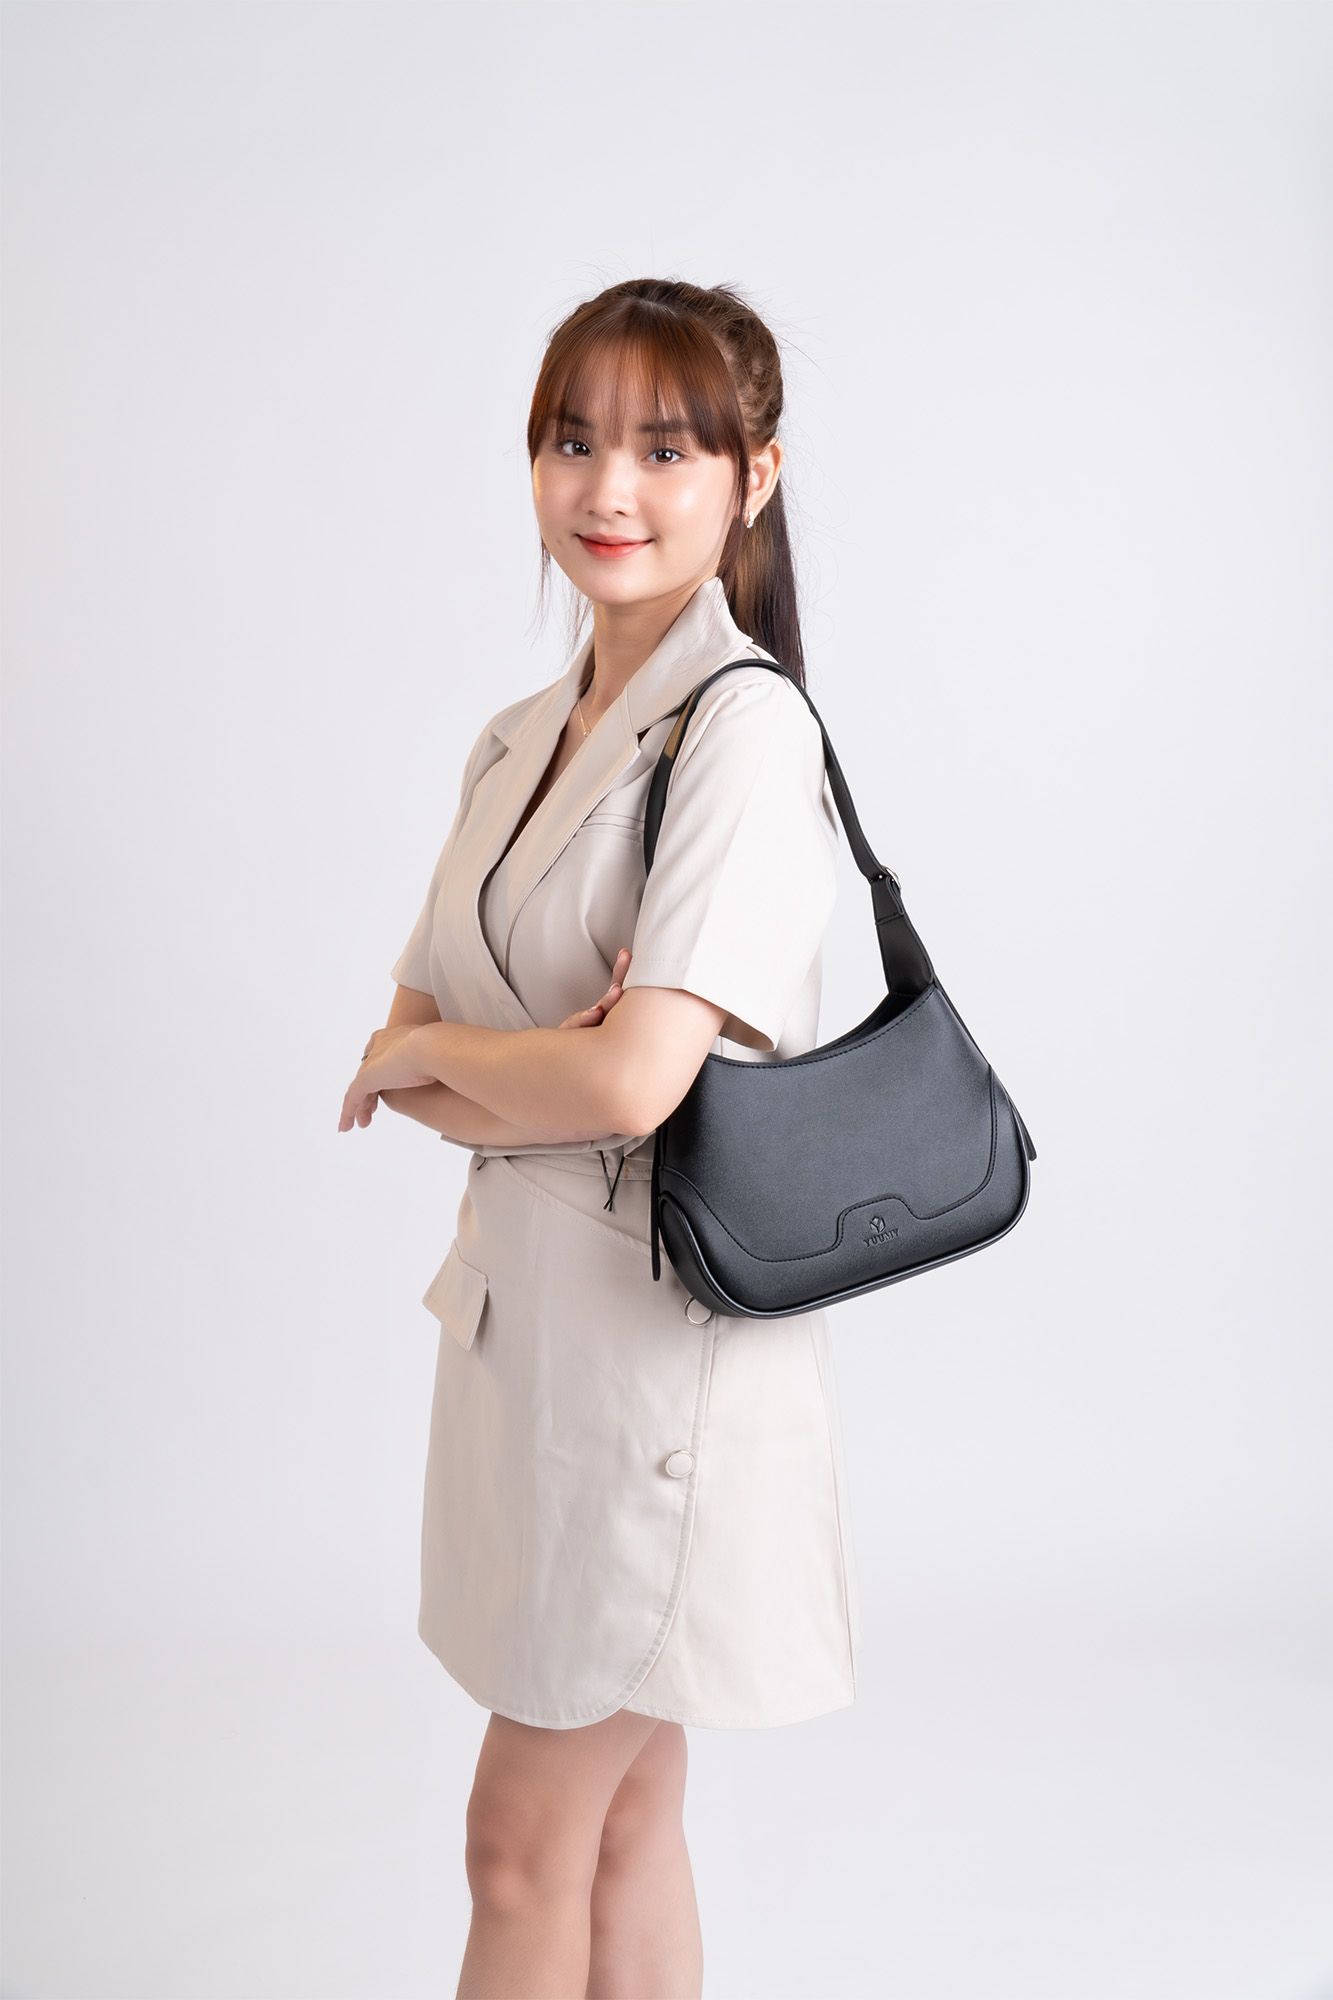 Túi xách da nữ nhỏ đeo vai Yuumy Seasand YN165D Màu đen